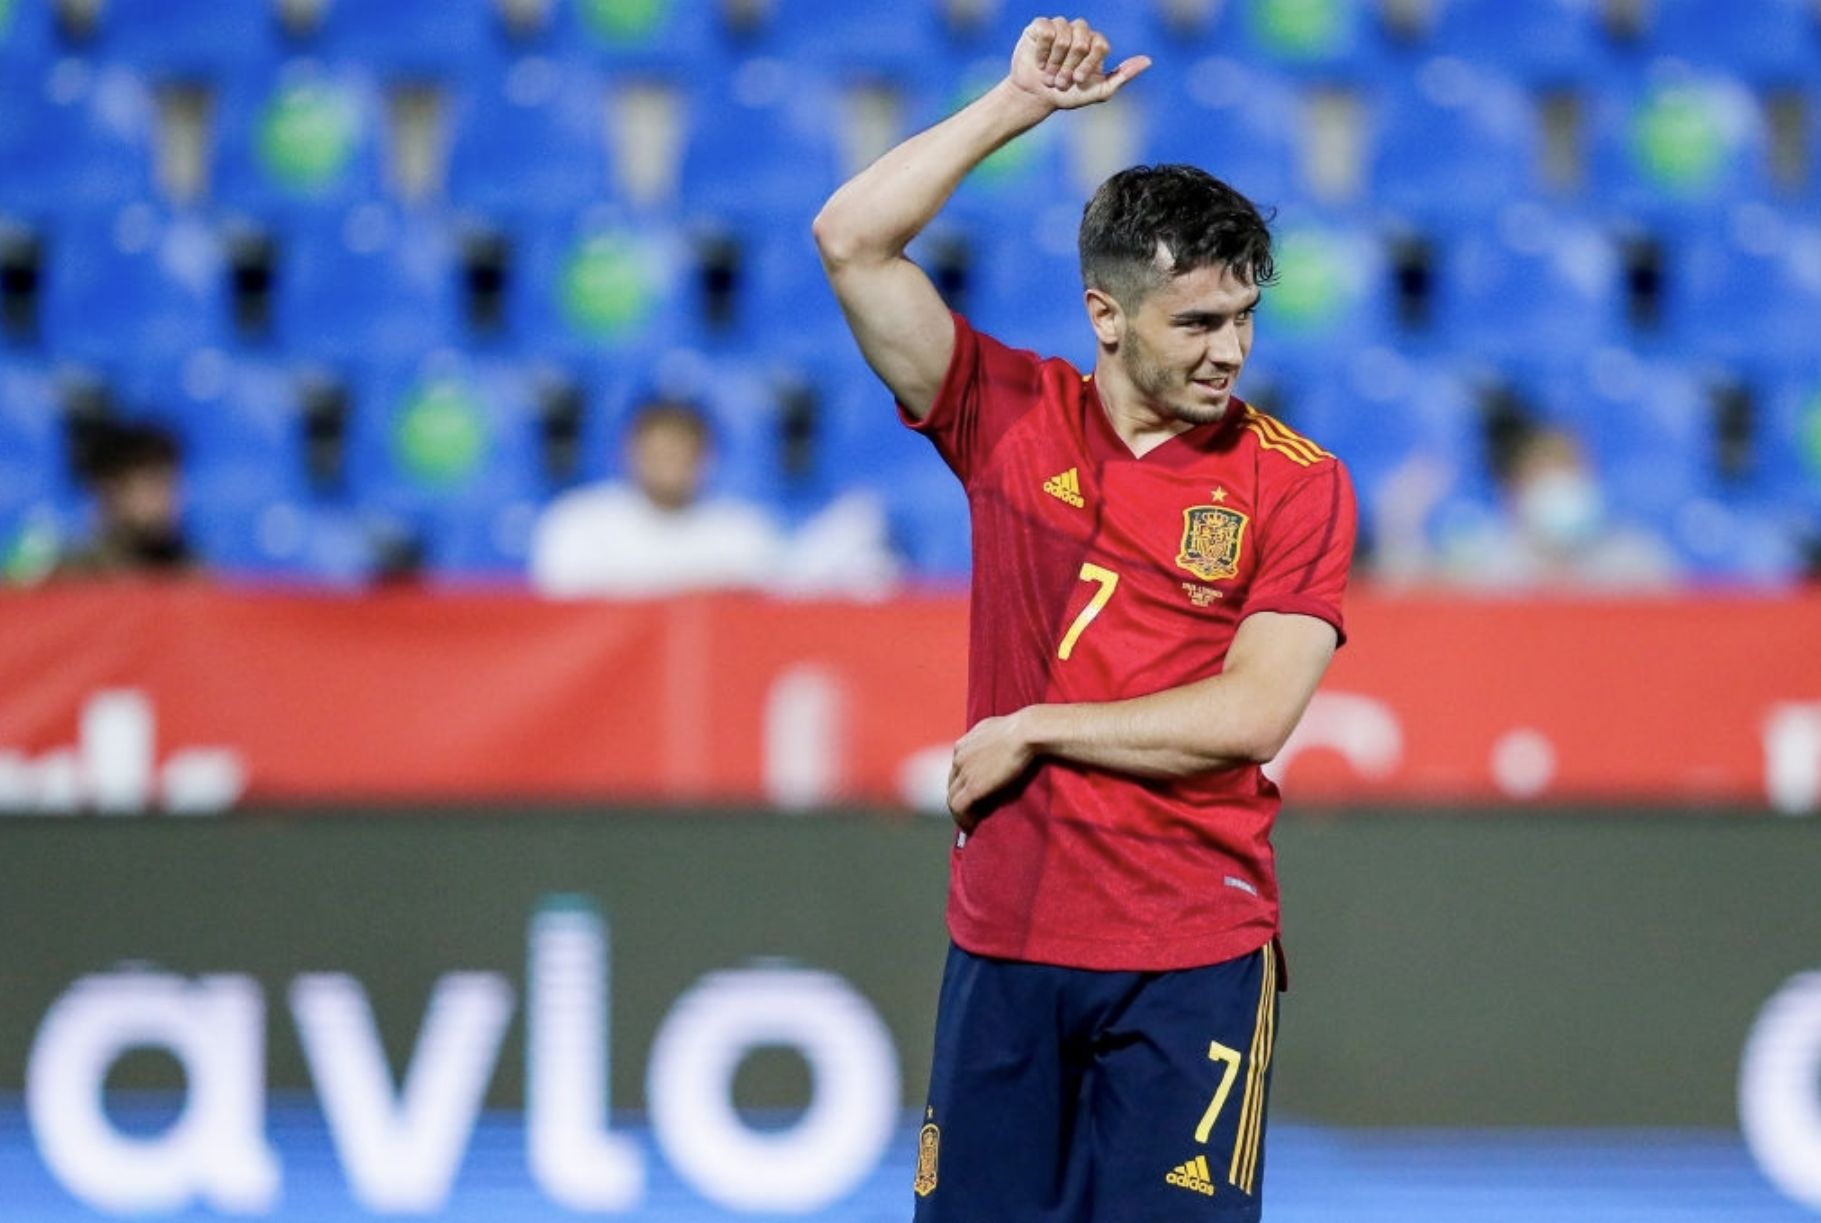 براهيم دياز بقميص منتخب إسبانيا لكرة القدم (milanreports)